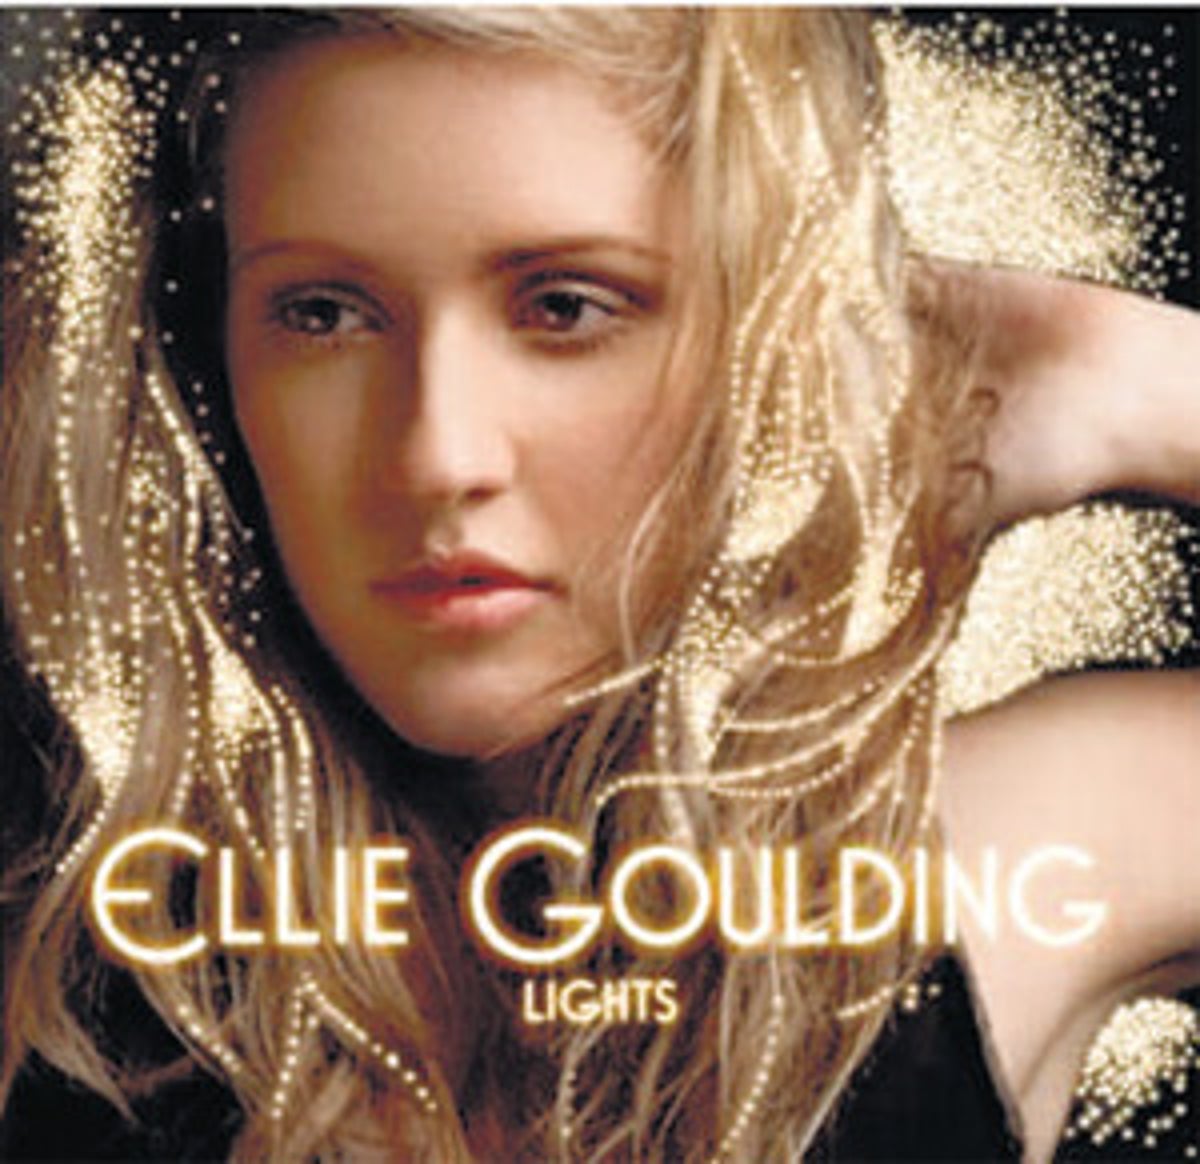 medarbejder profil Forgænger Album: Ellie Goulding, Lights (Polydor) | The Independent | The Independent